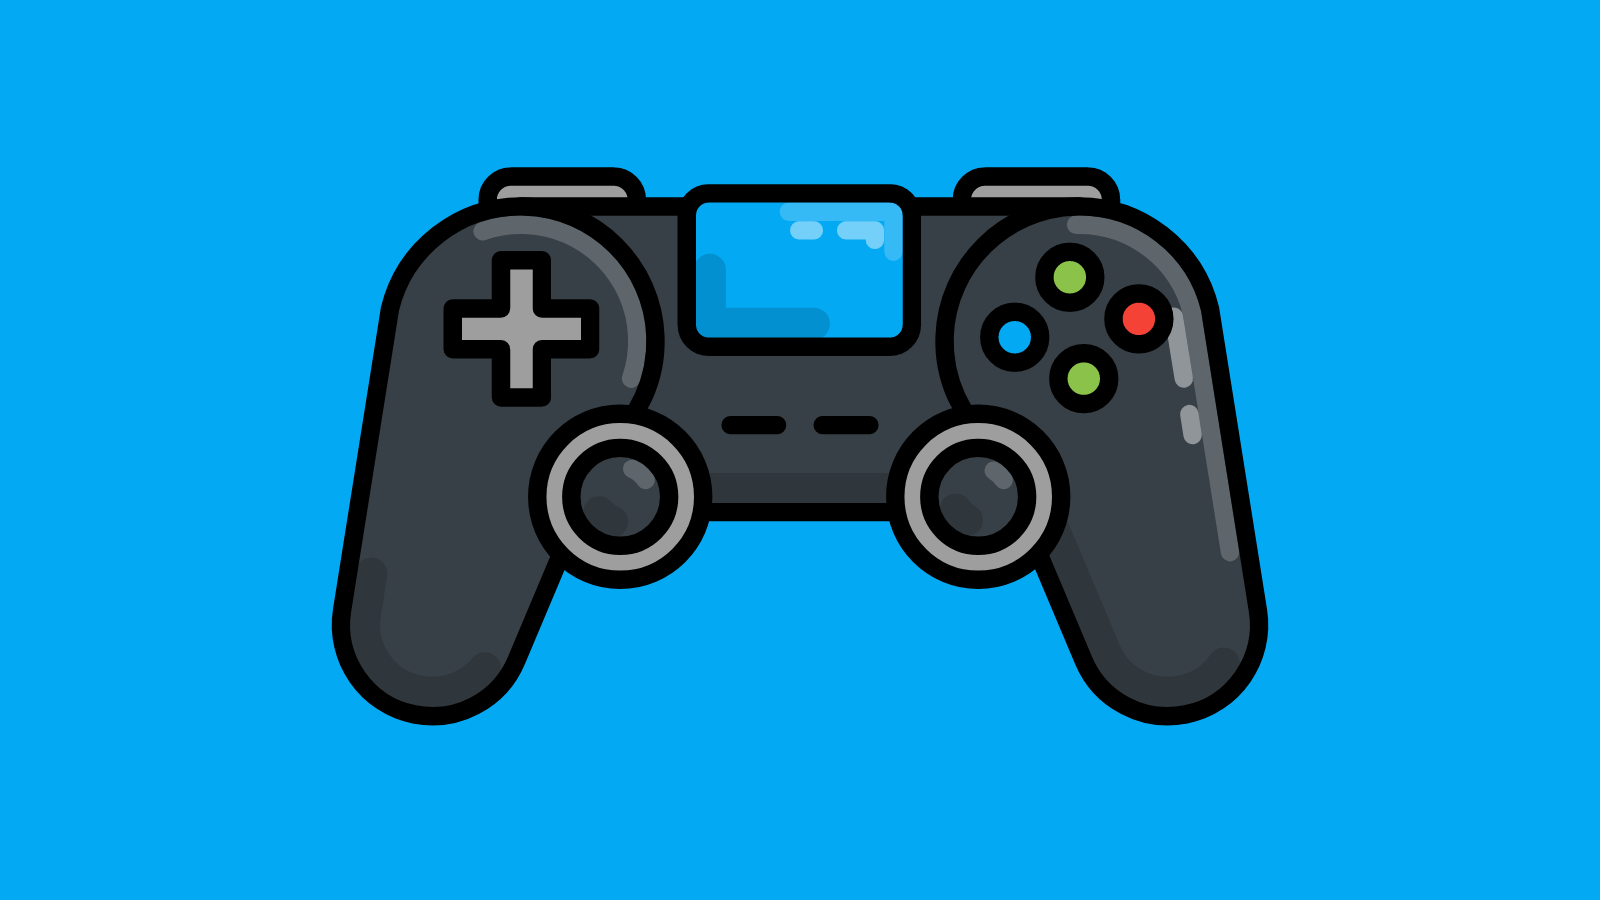 A video game controller